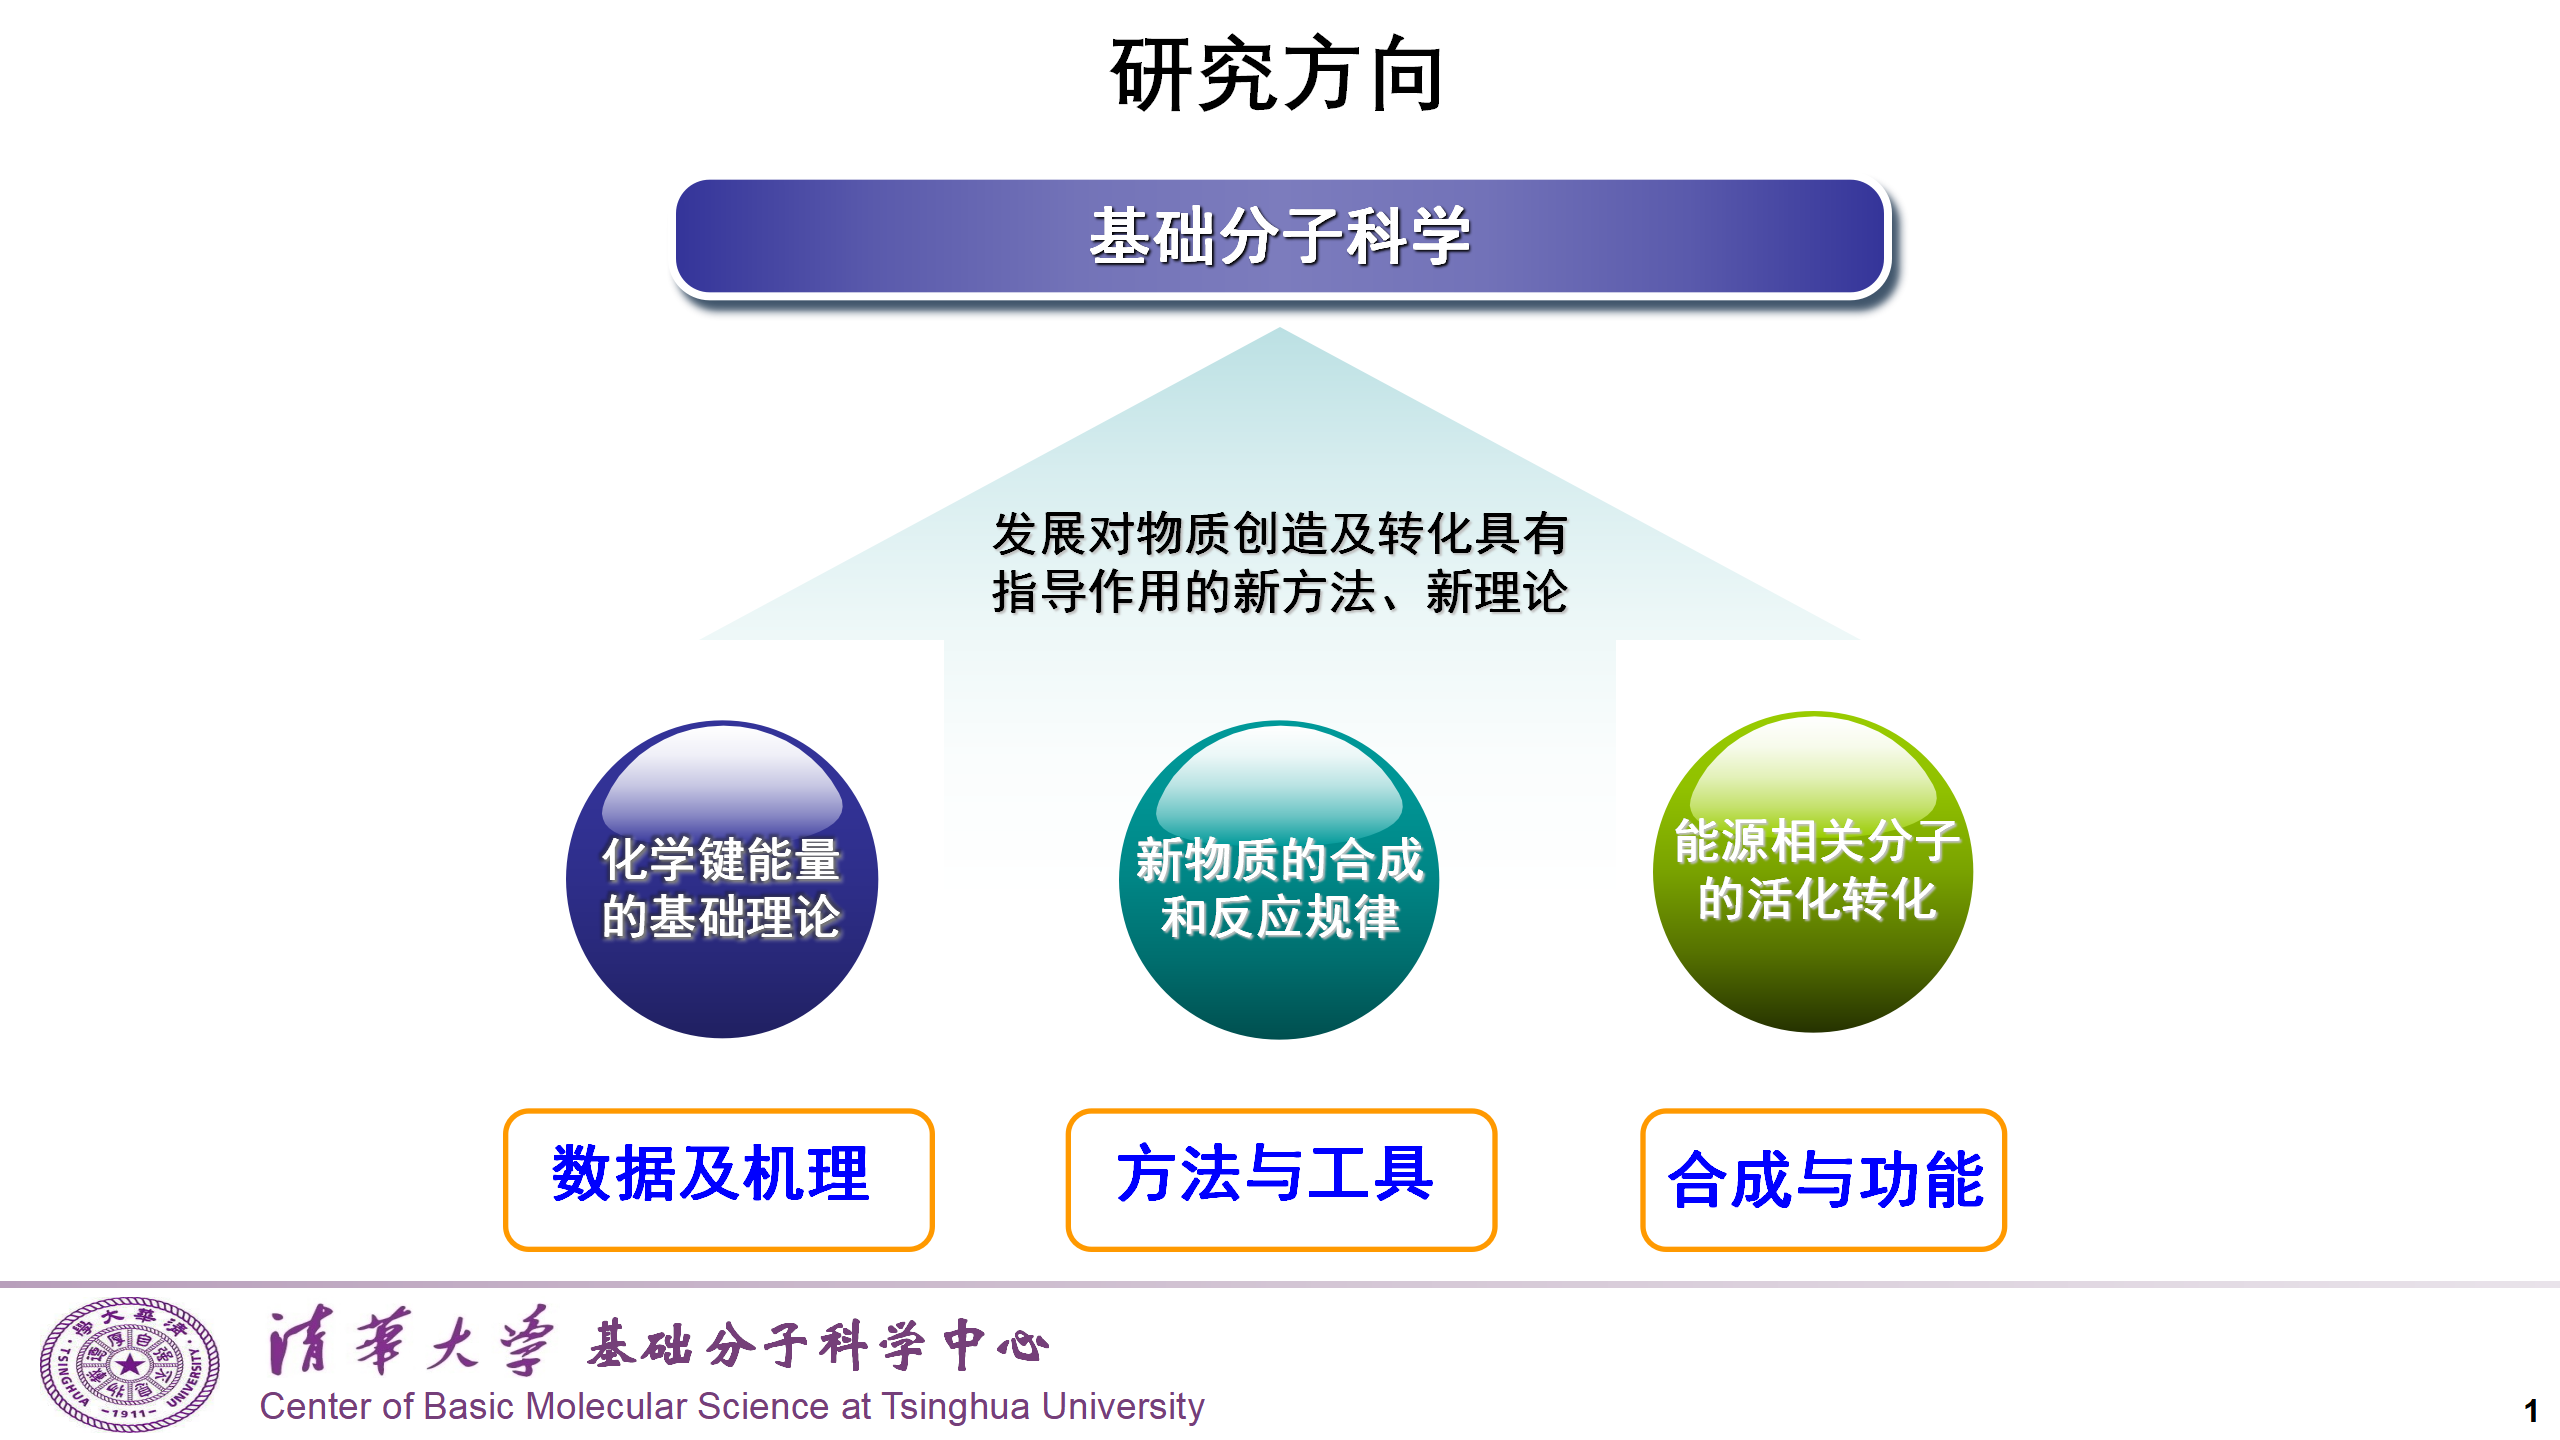 中文版研究方向配图_01.png